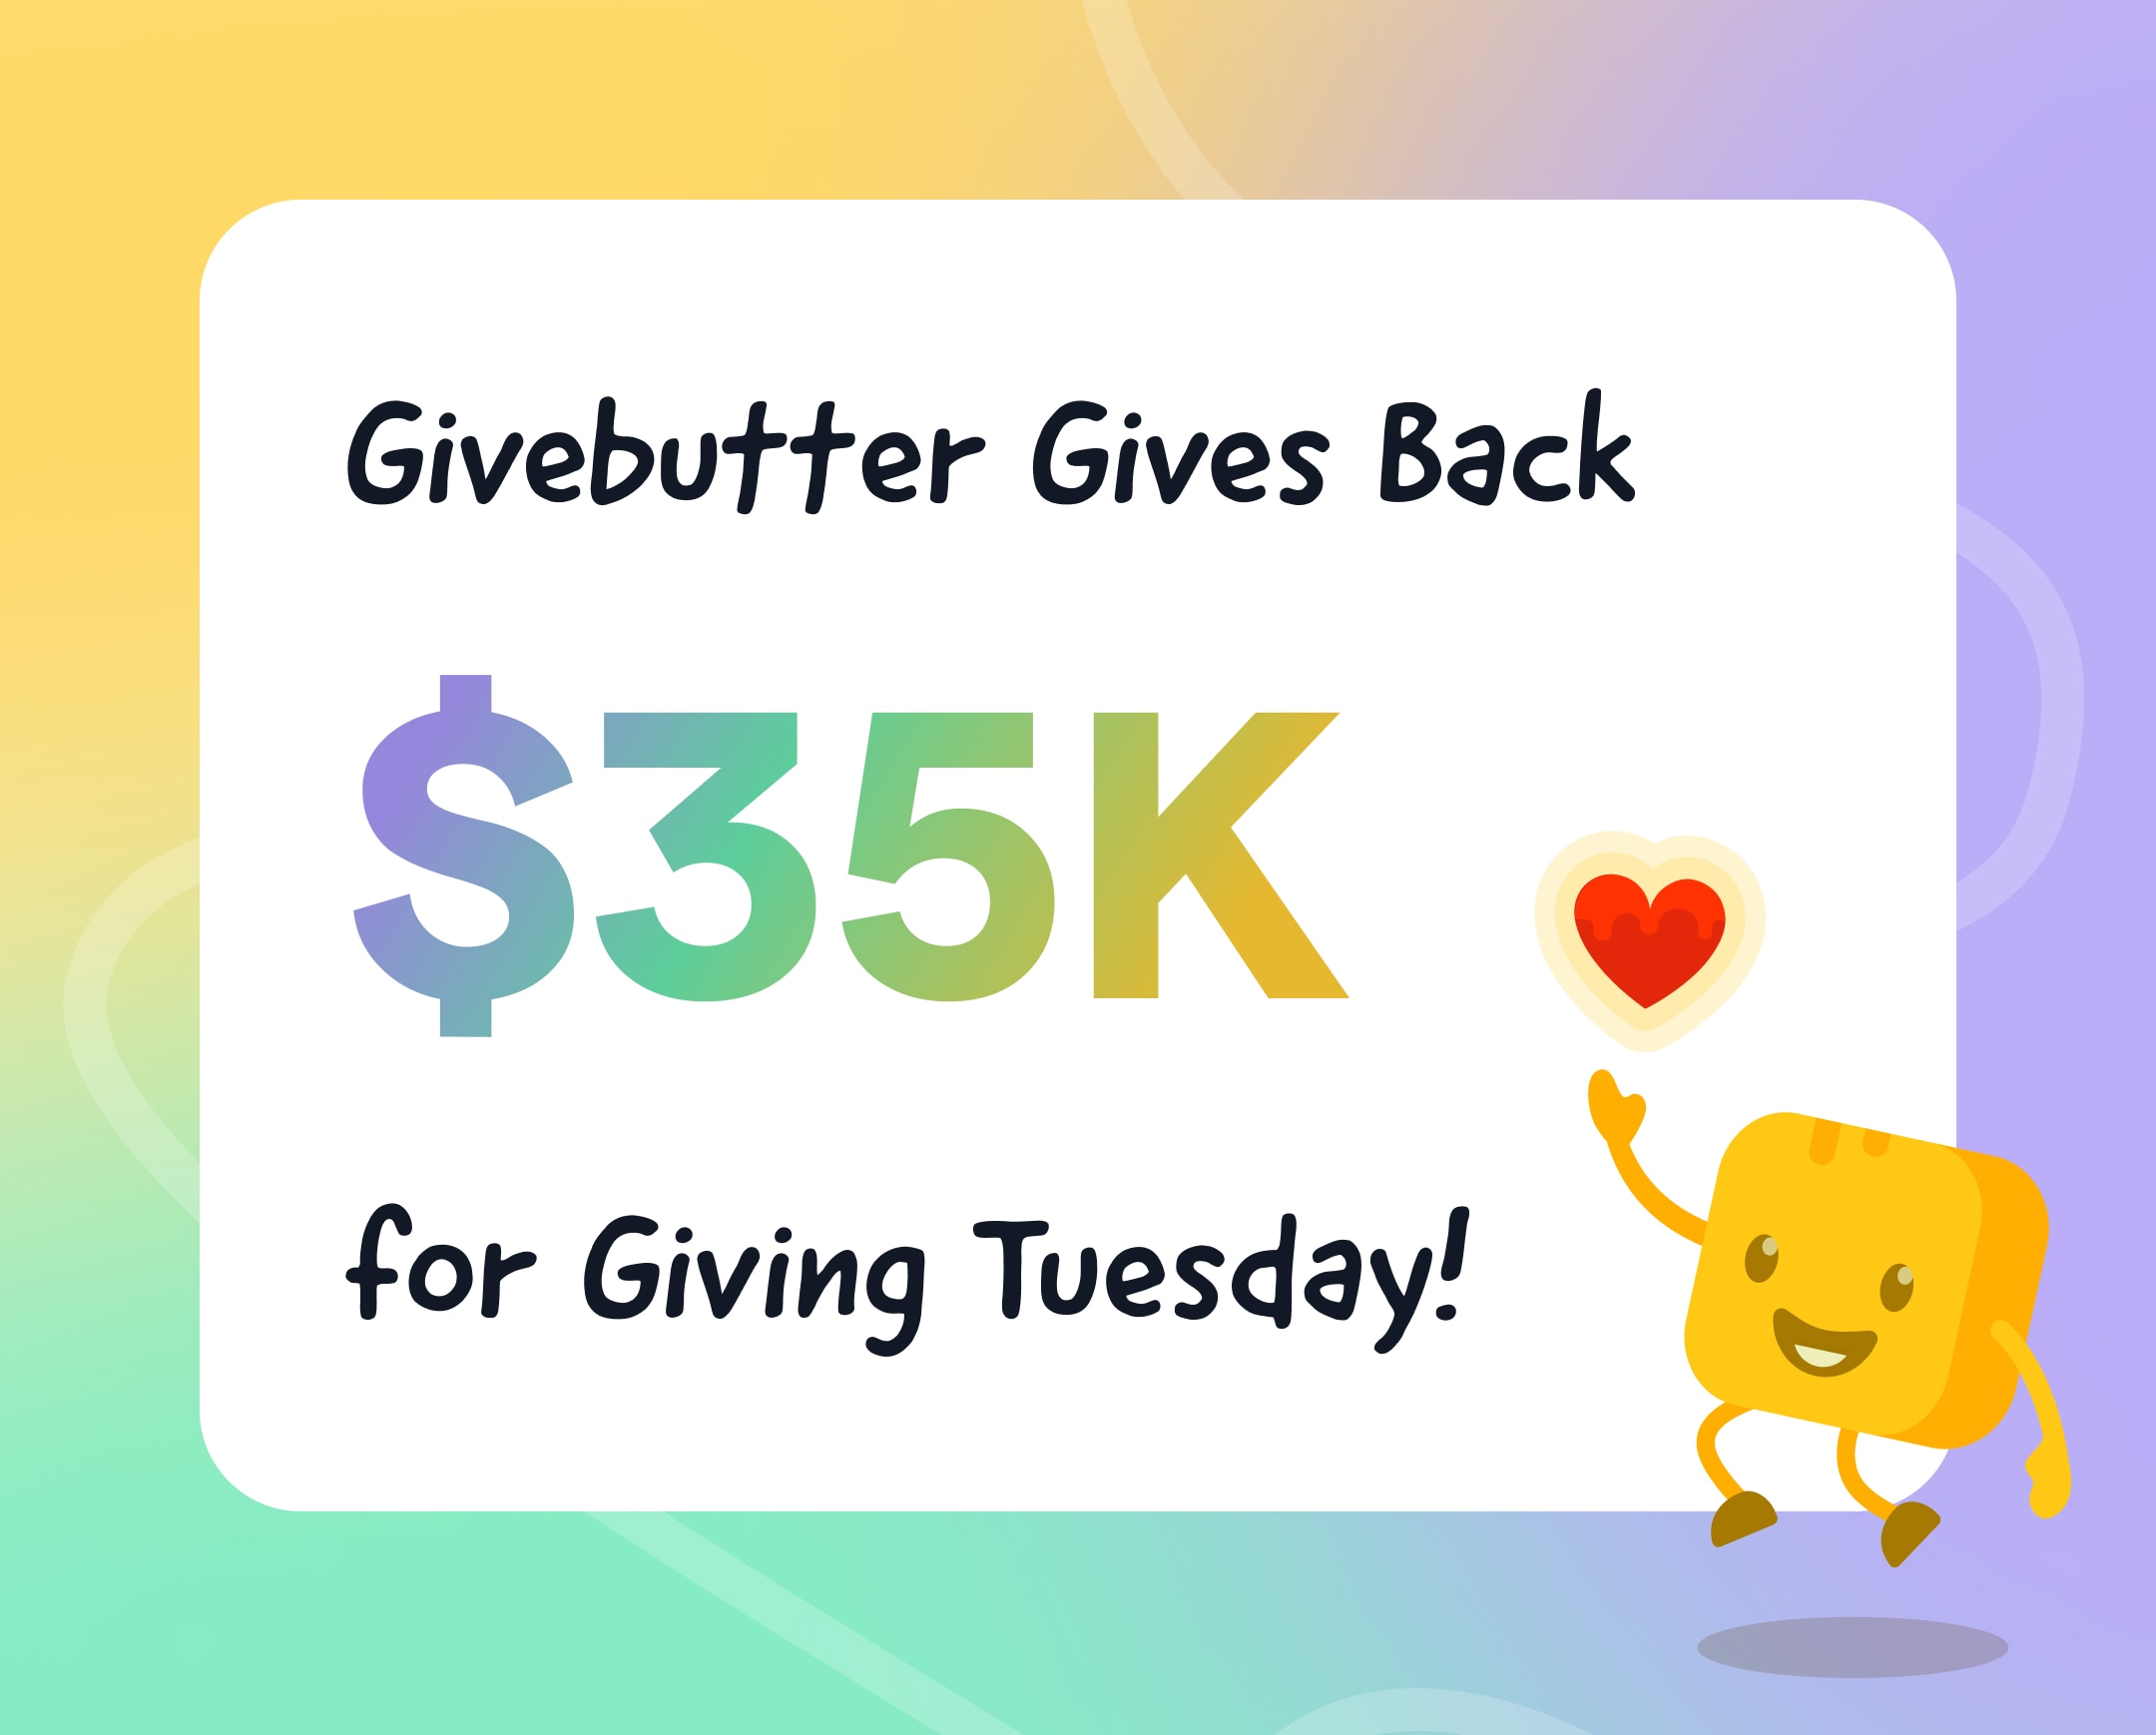 幸运飞行艇 gives back $35K for Giving Tuesday